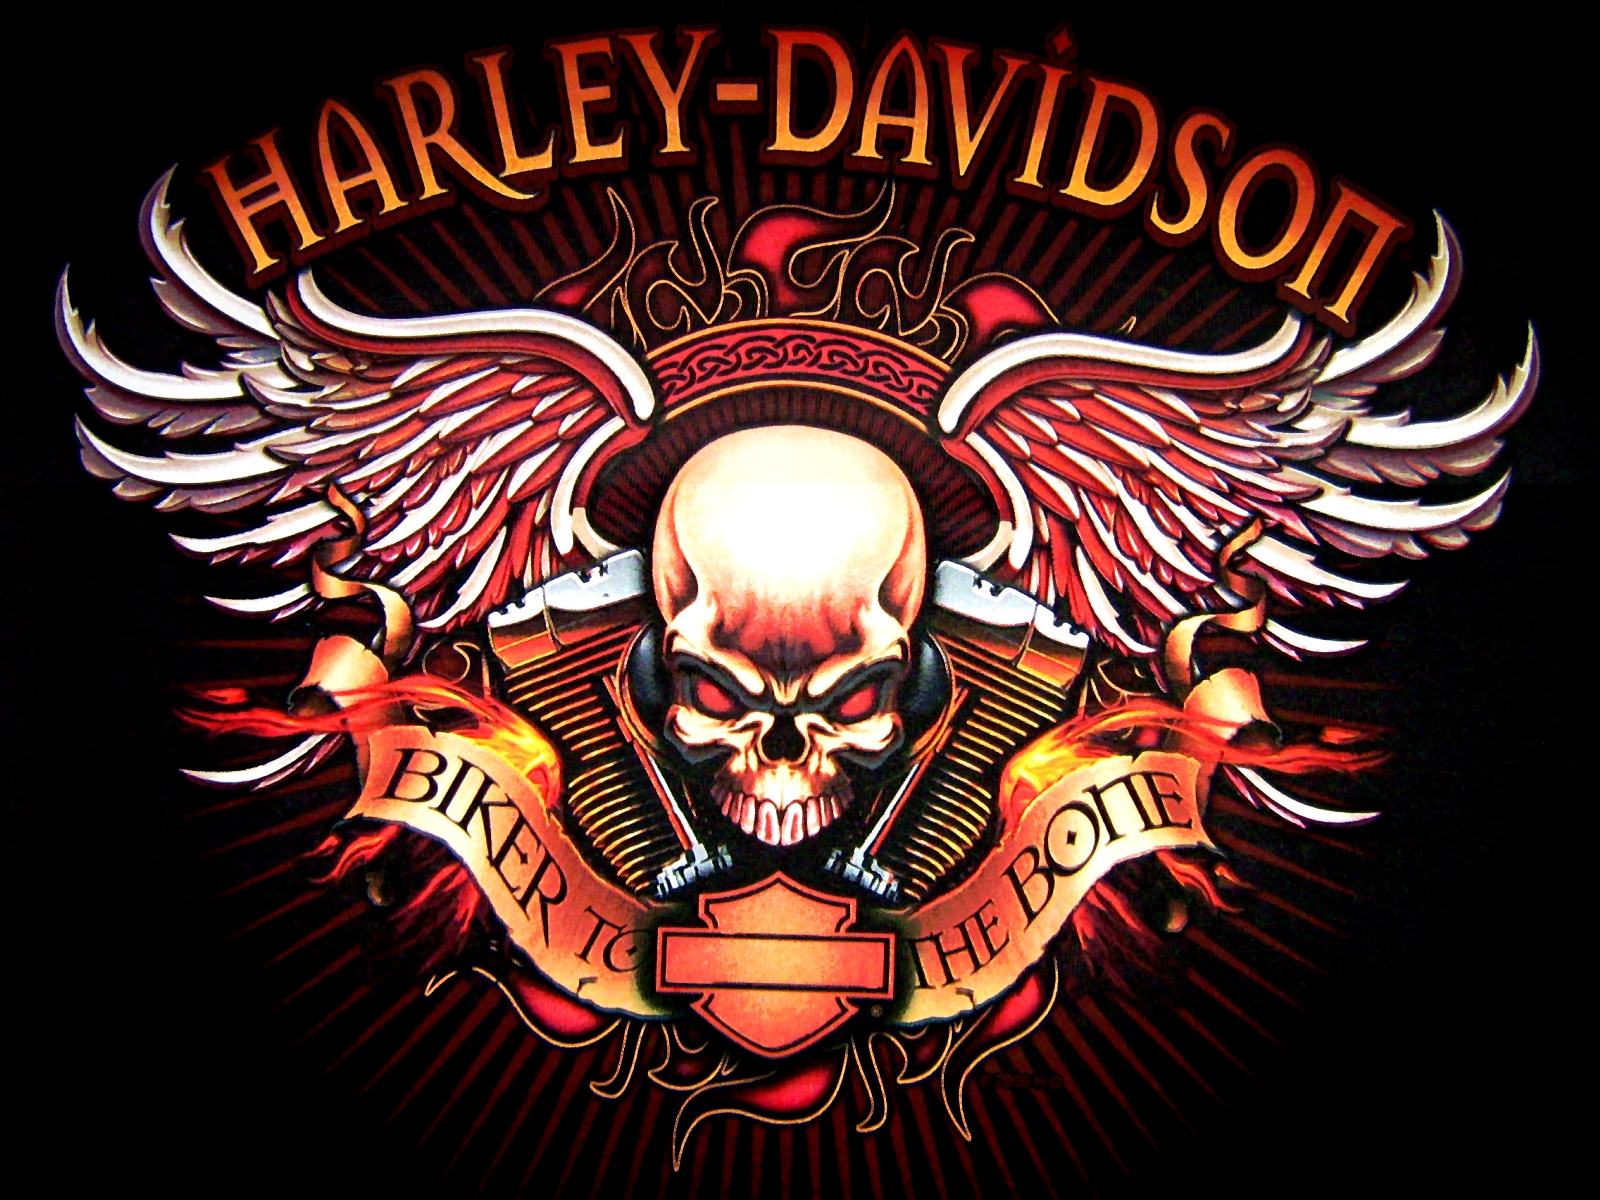 harley davidson logo wallpaper,illustration,logo,skull,t shirt,emblem